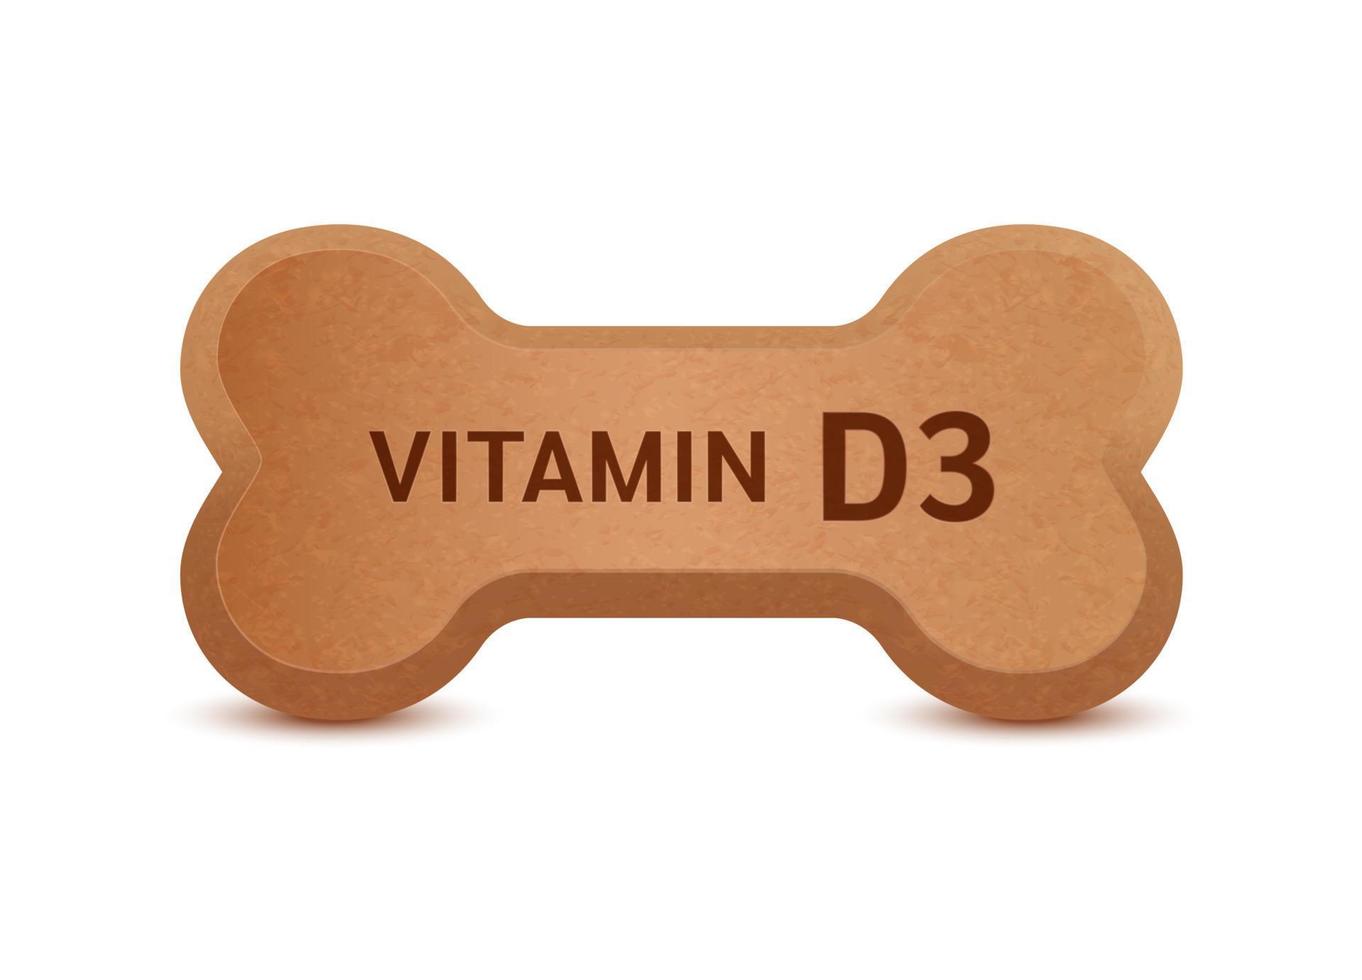 Alimento seco en forma de hueso para gatos y perros con vitamina d3 suplemento dietético huesos artritis canina artrosis. sobre un fondo blanco vector 3d. puede utilizar para la publicidad de alimentos para mascotas.